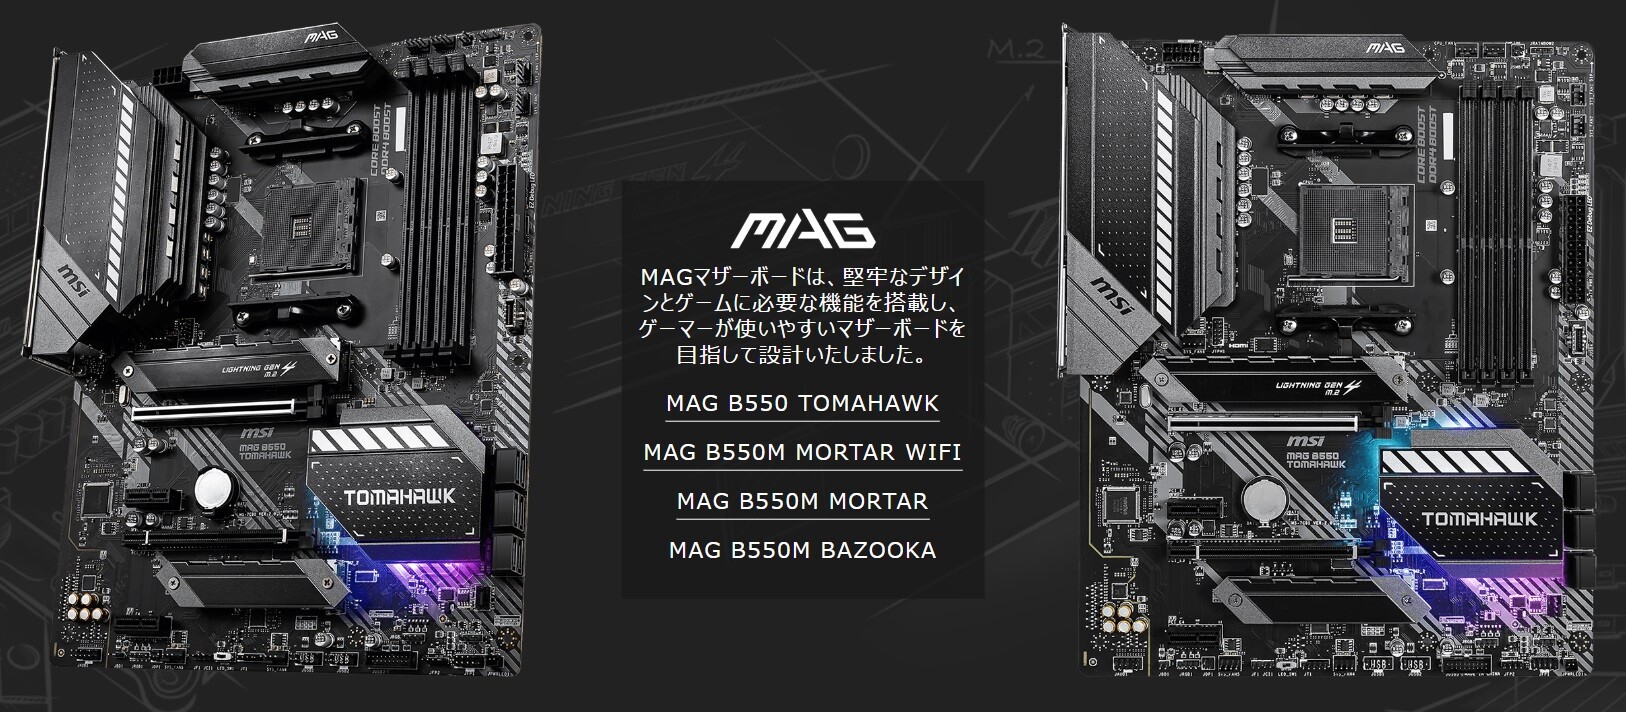 MSIのB550マザーボードのMPG、MAG、PROシリーズのラインナップ : PCパーツまとめ